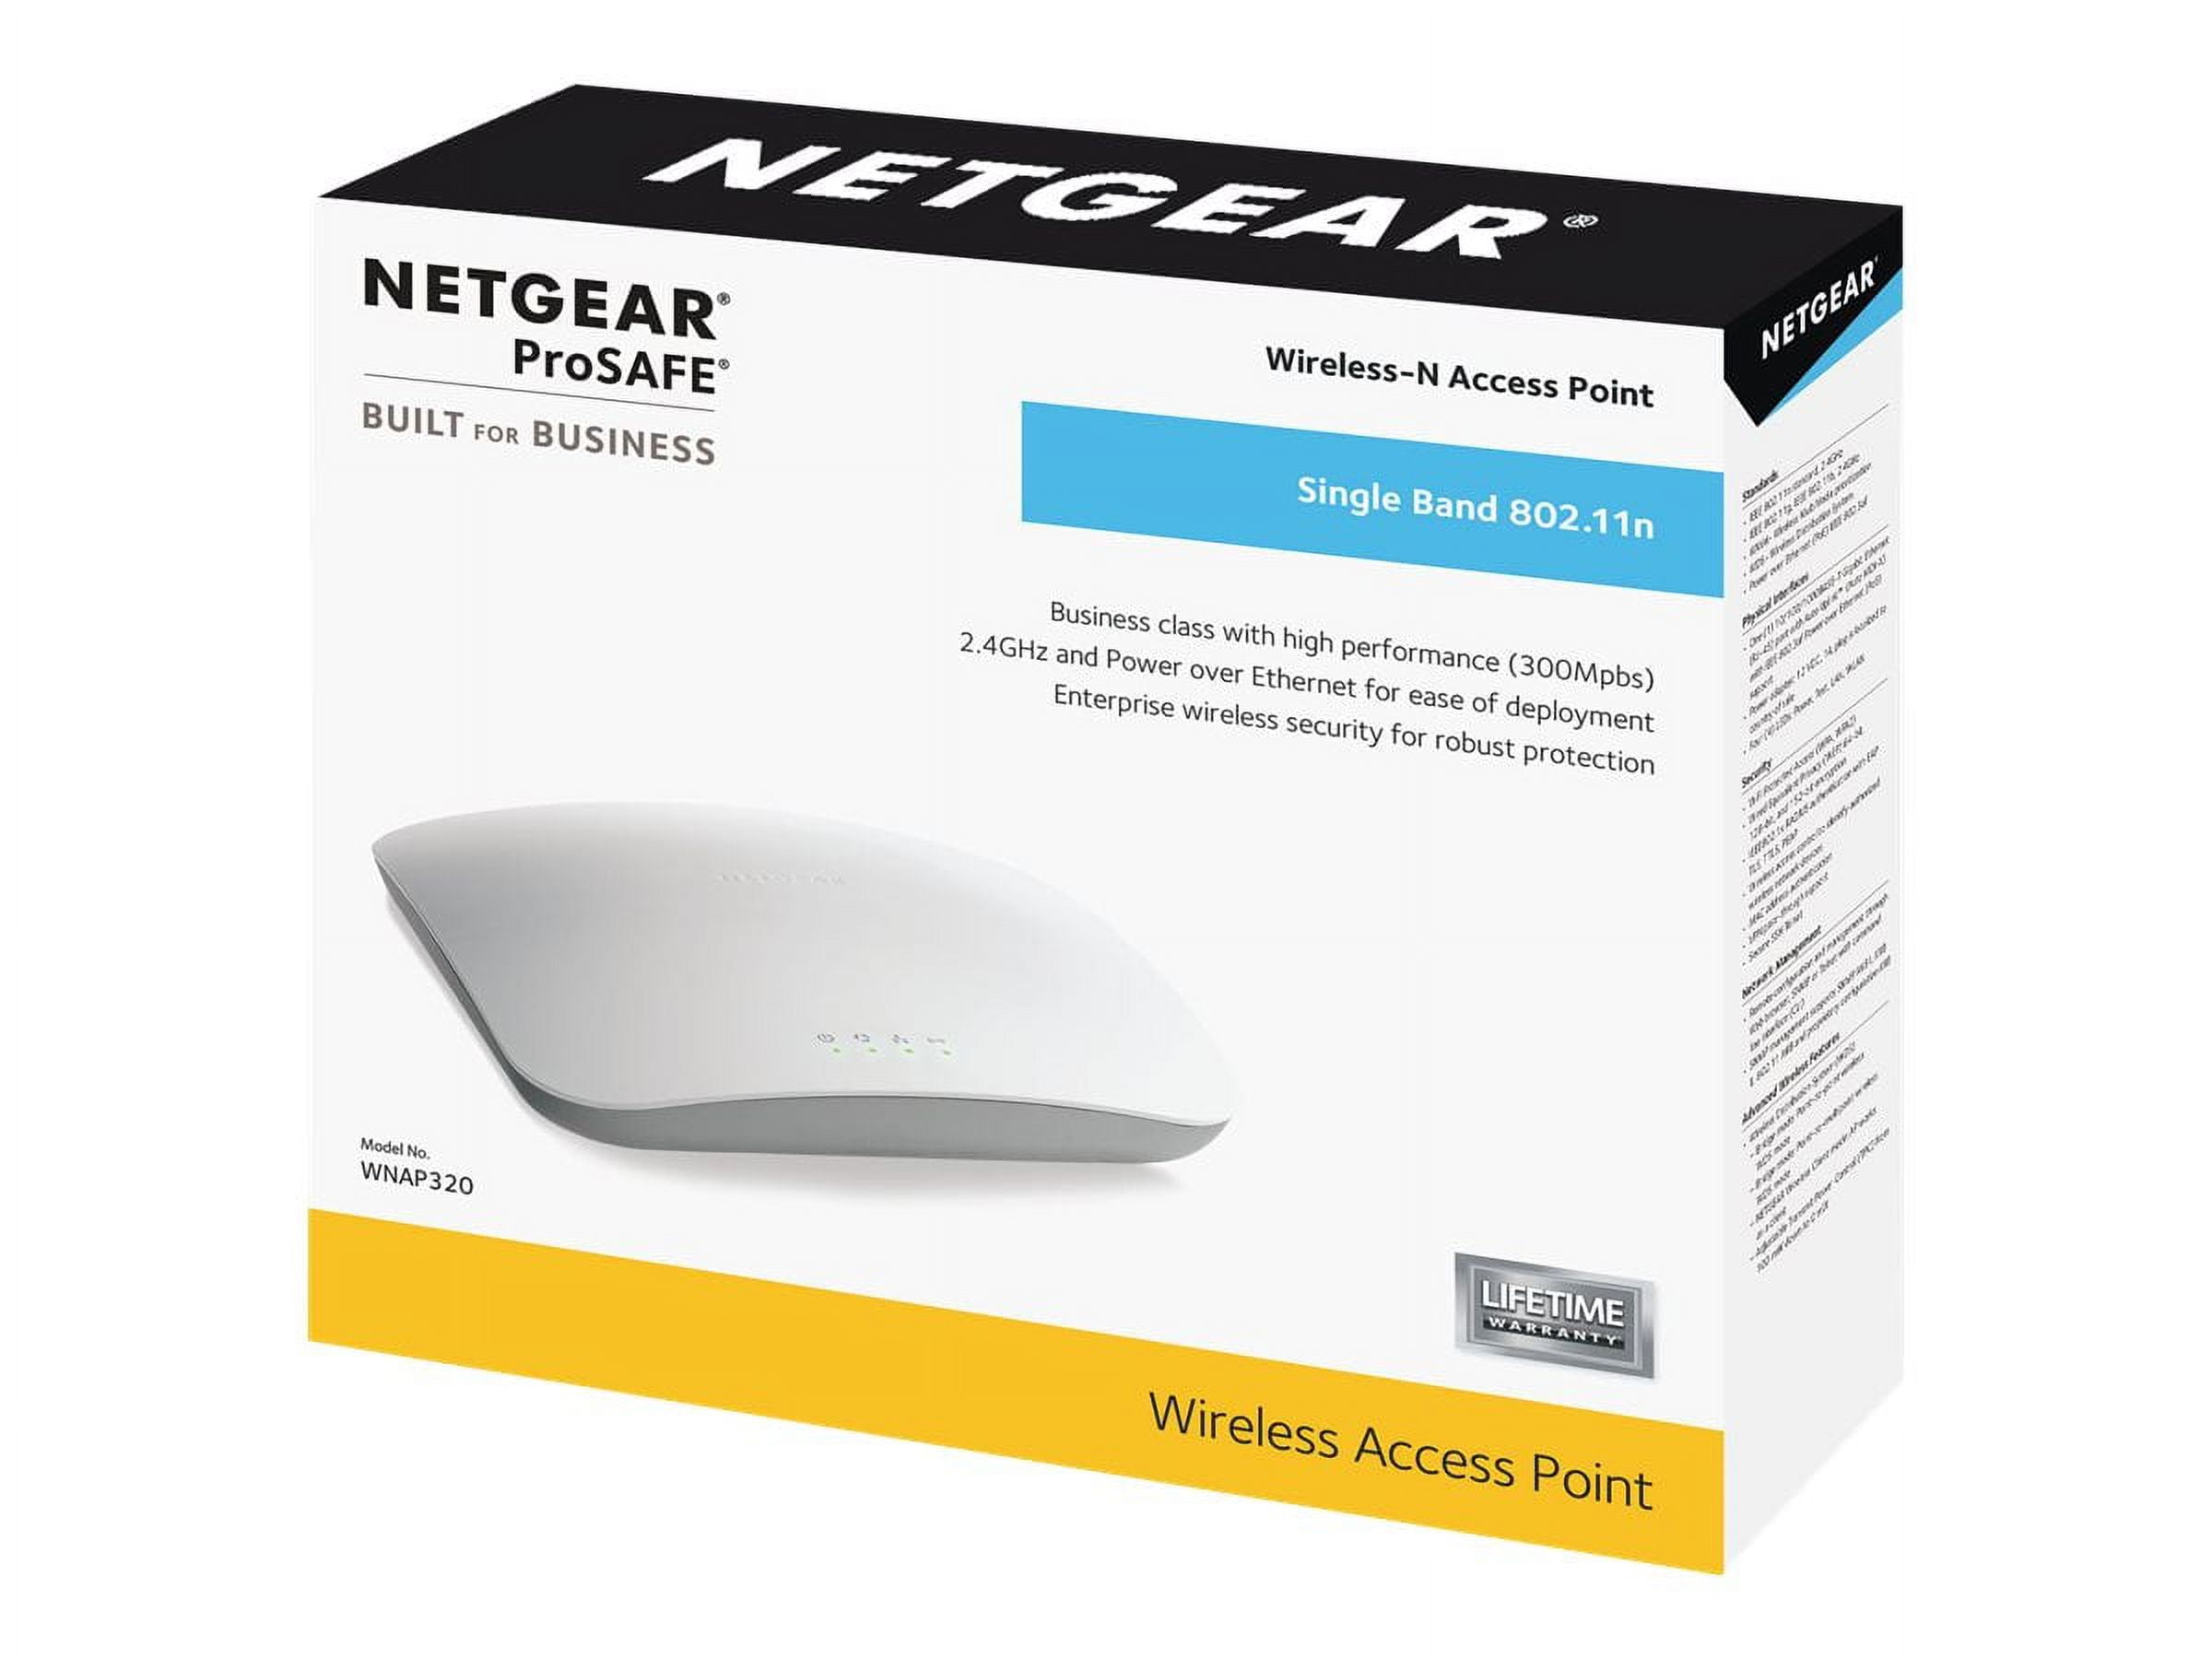 NETGEAR NETGEAR PROSAFE WNAP320 (02) （WiFi・無線LAN アクセスポイント）